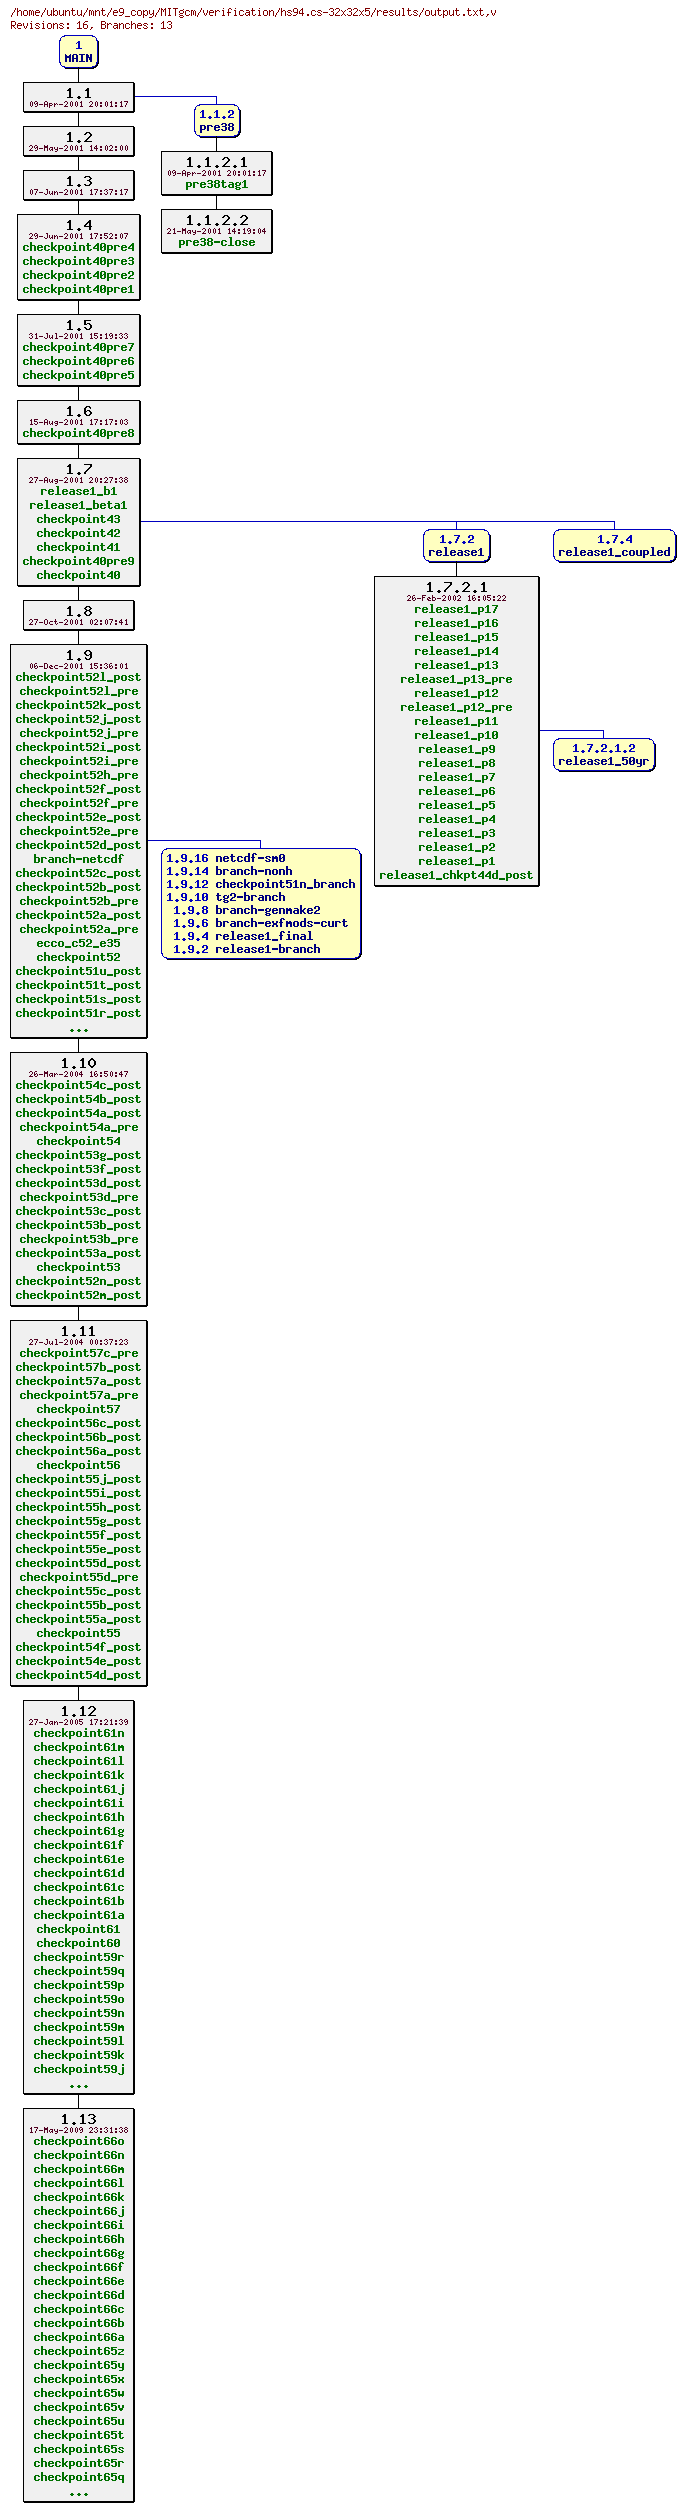 Revisions of MITgcm/verification/hs94.cs-32x32x5/results/output.txt